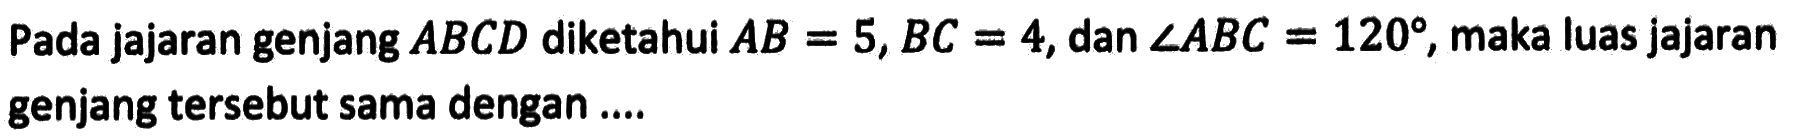 Pada jajaran genjang ABCD diketahui AB=5, BC=4, dan sudut ABC=120, maka luas jajaran genjang tersebut sama dengan ....